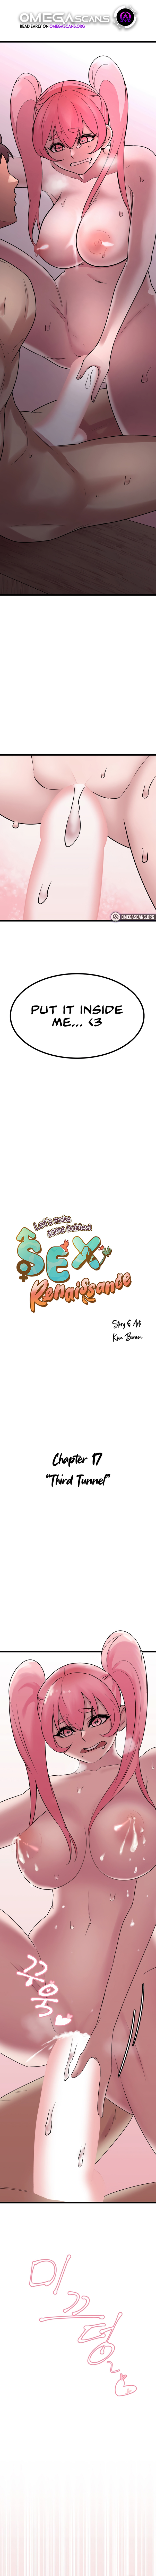 Sex Renaissance NEW image